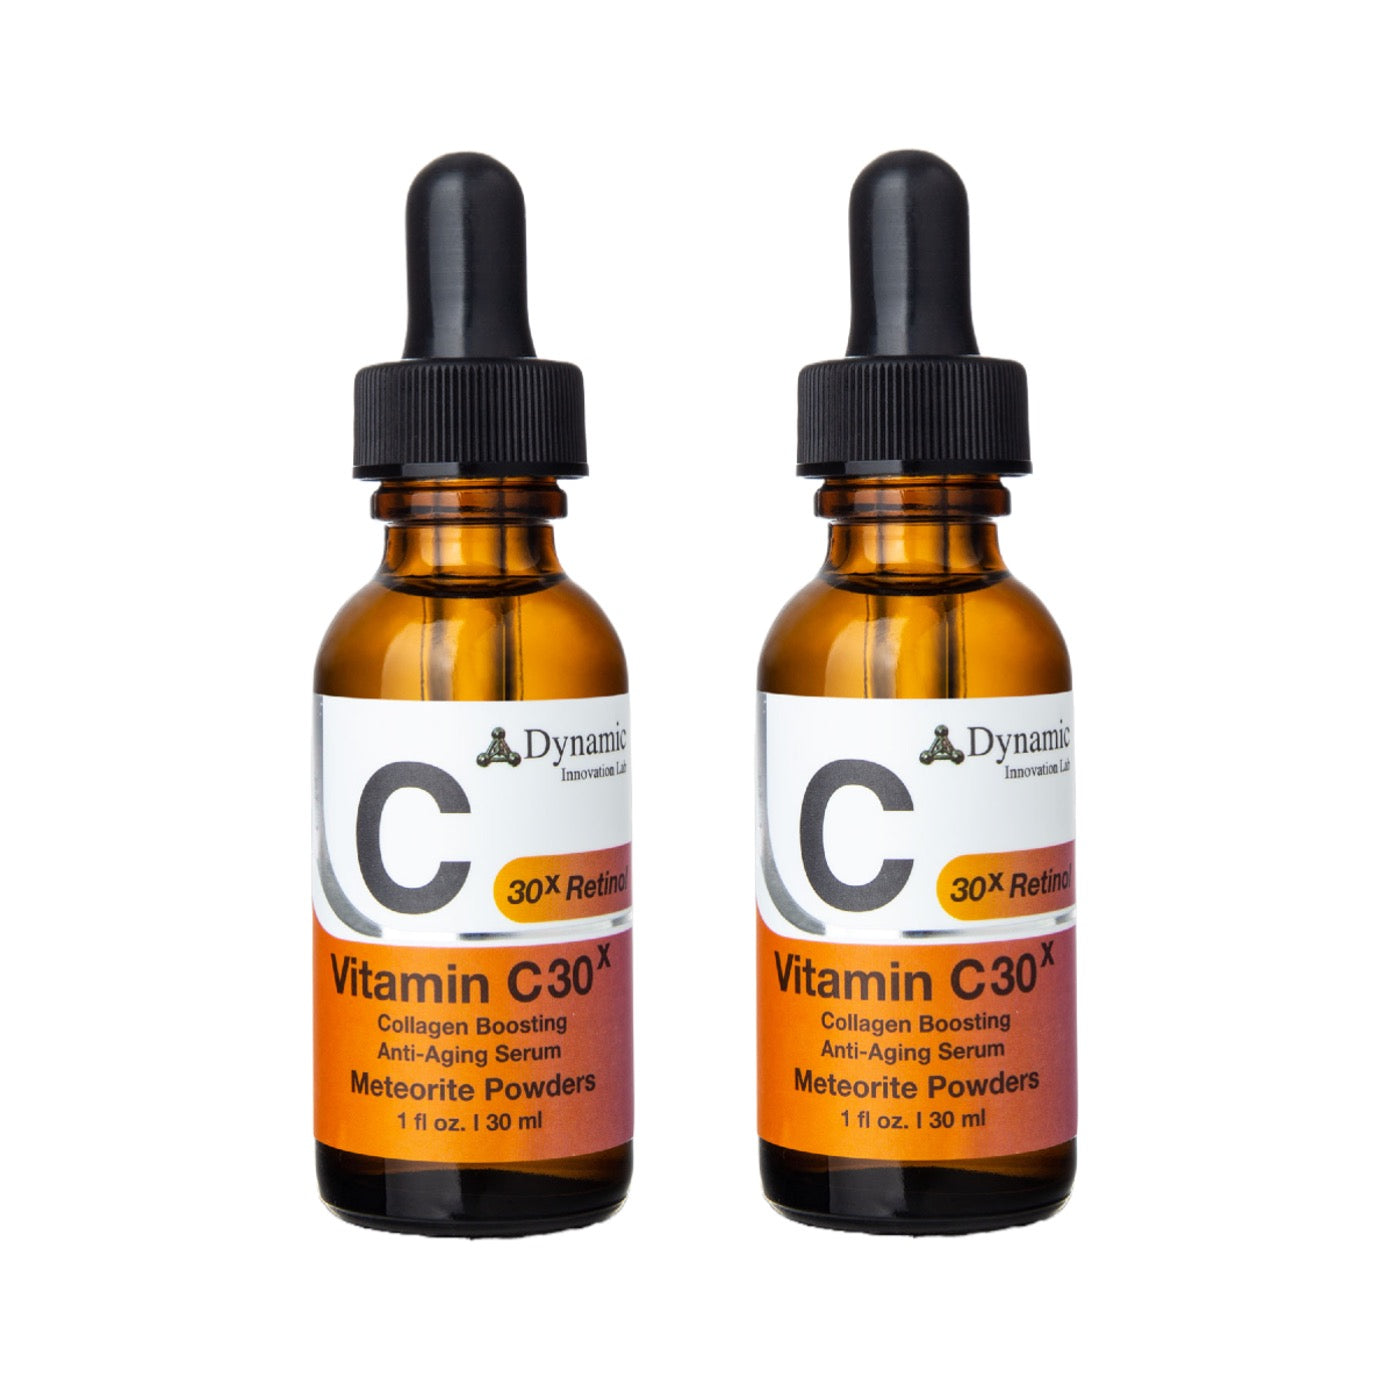 Vitamin C30X Collagen-Boosting Anti-Aging Serum